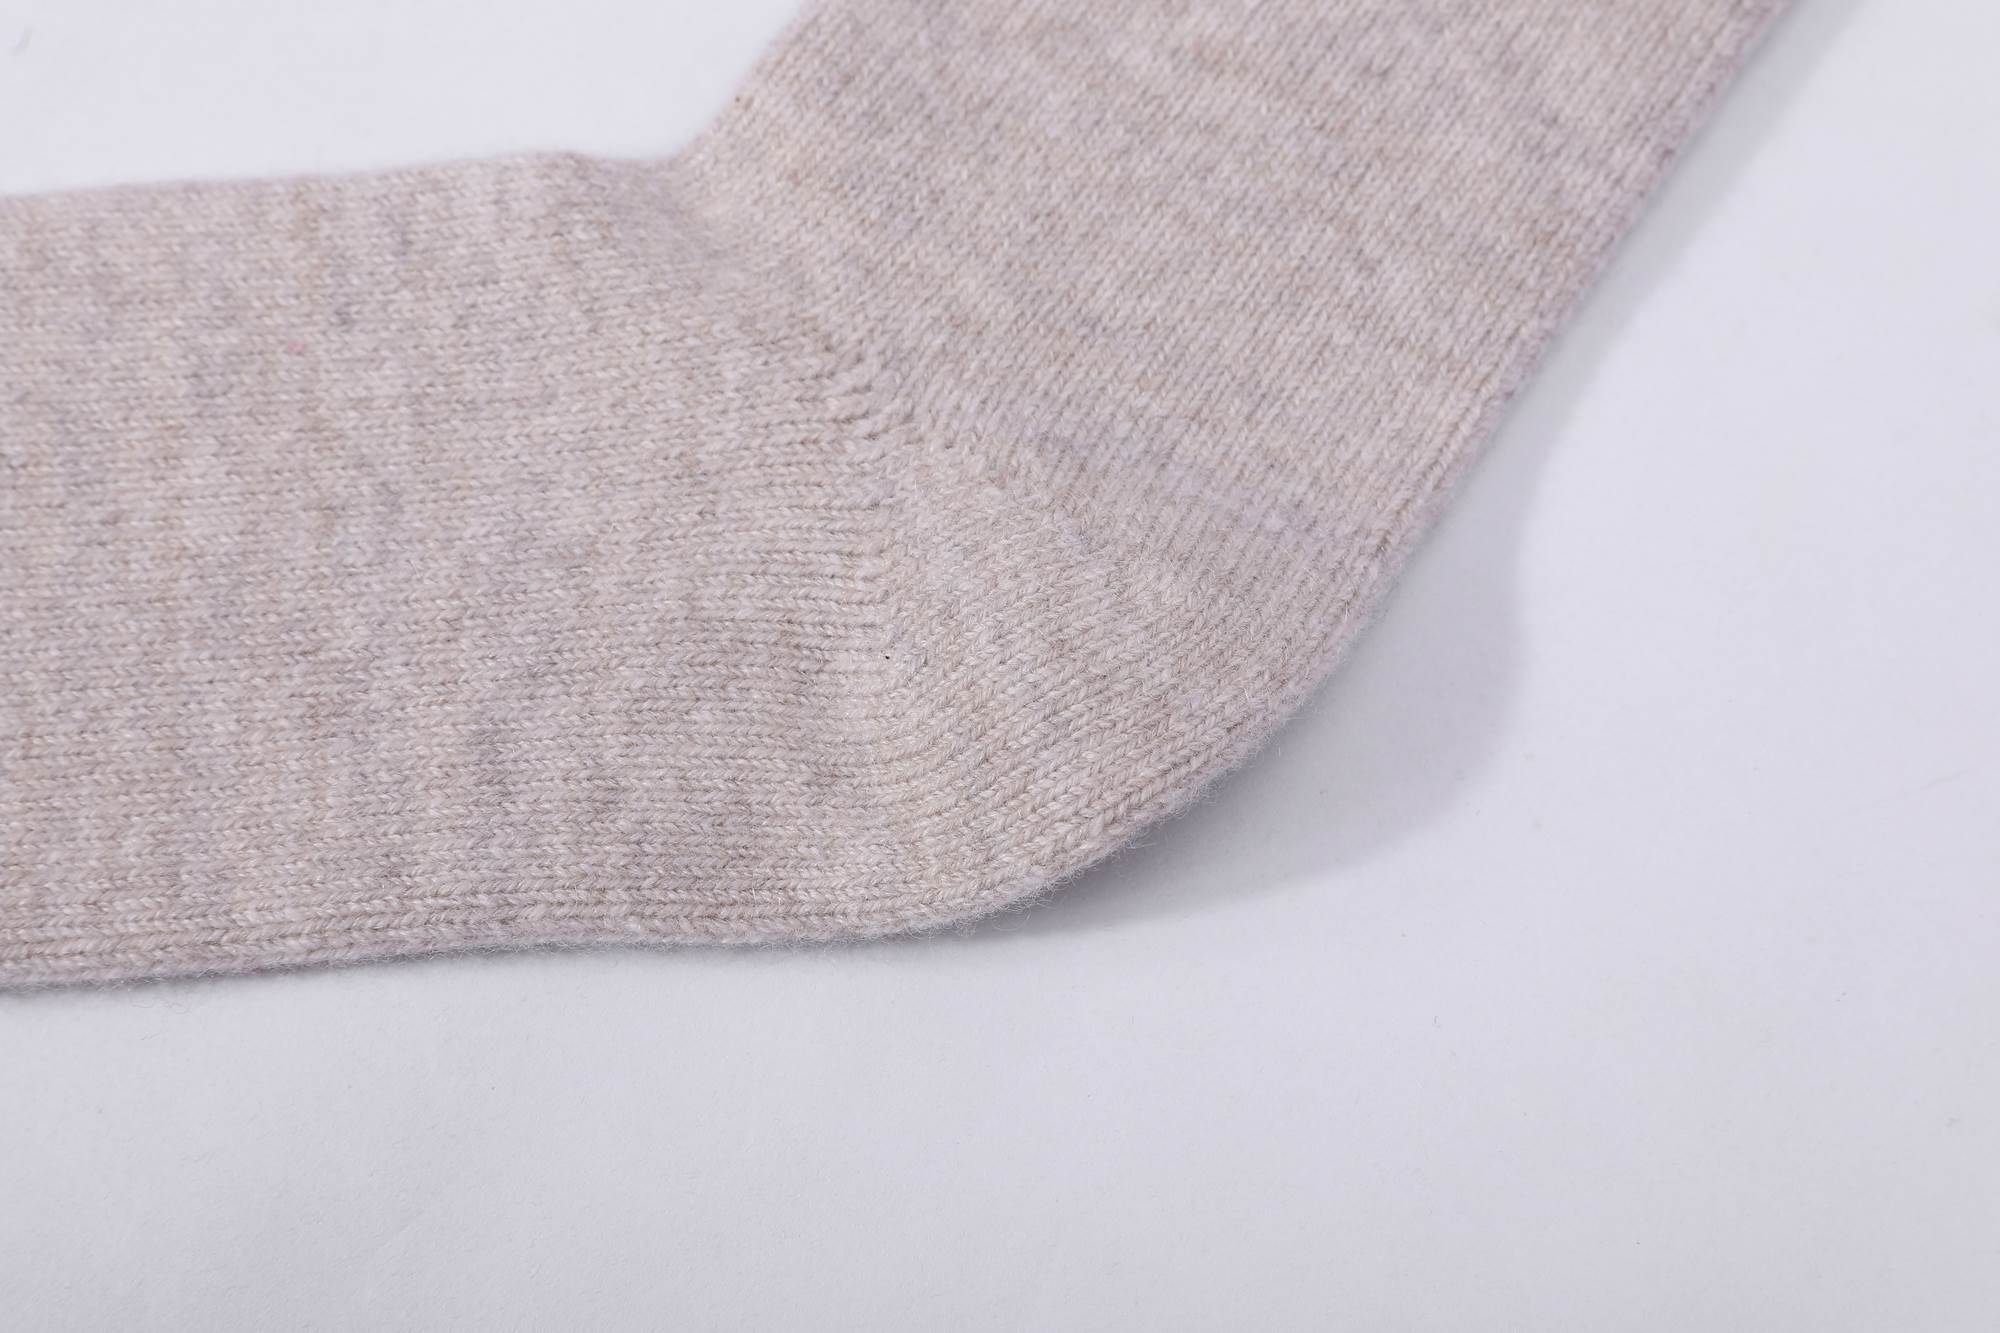 Seamless cashmere socks